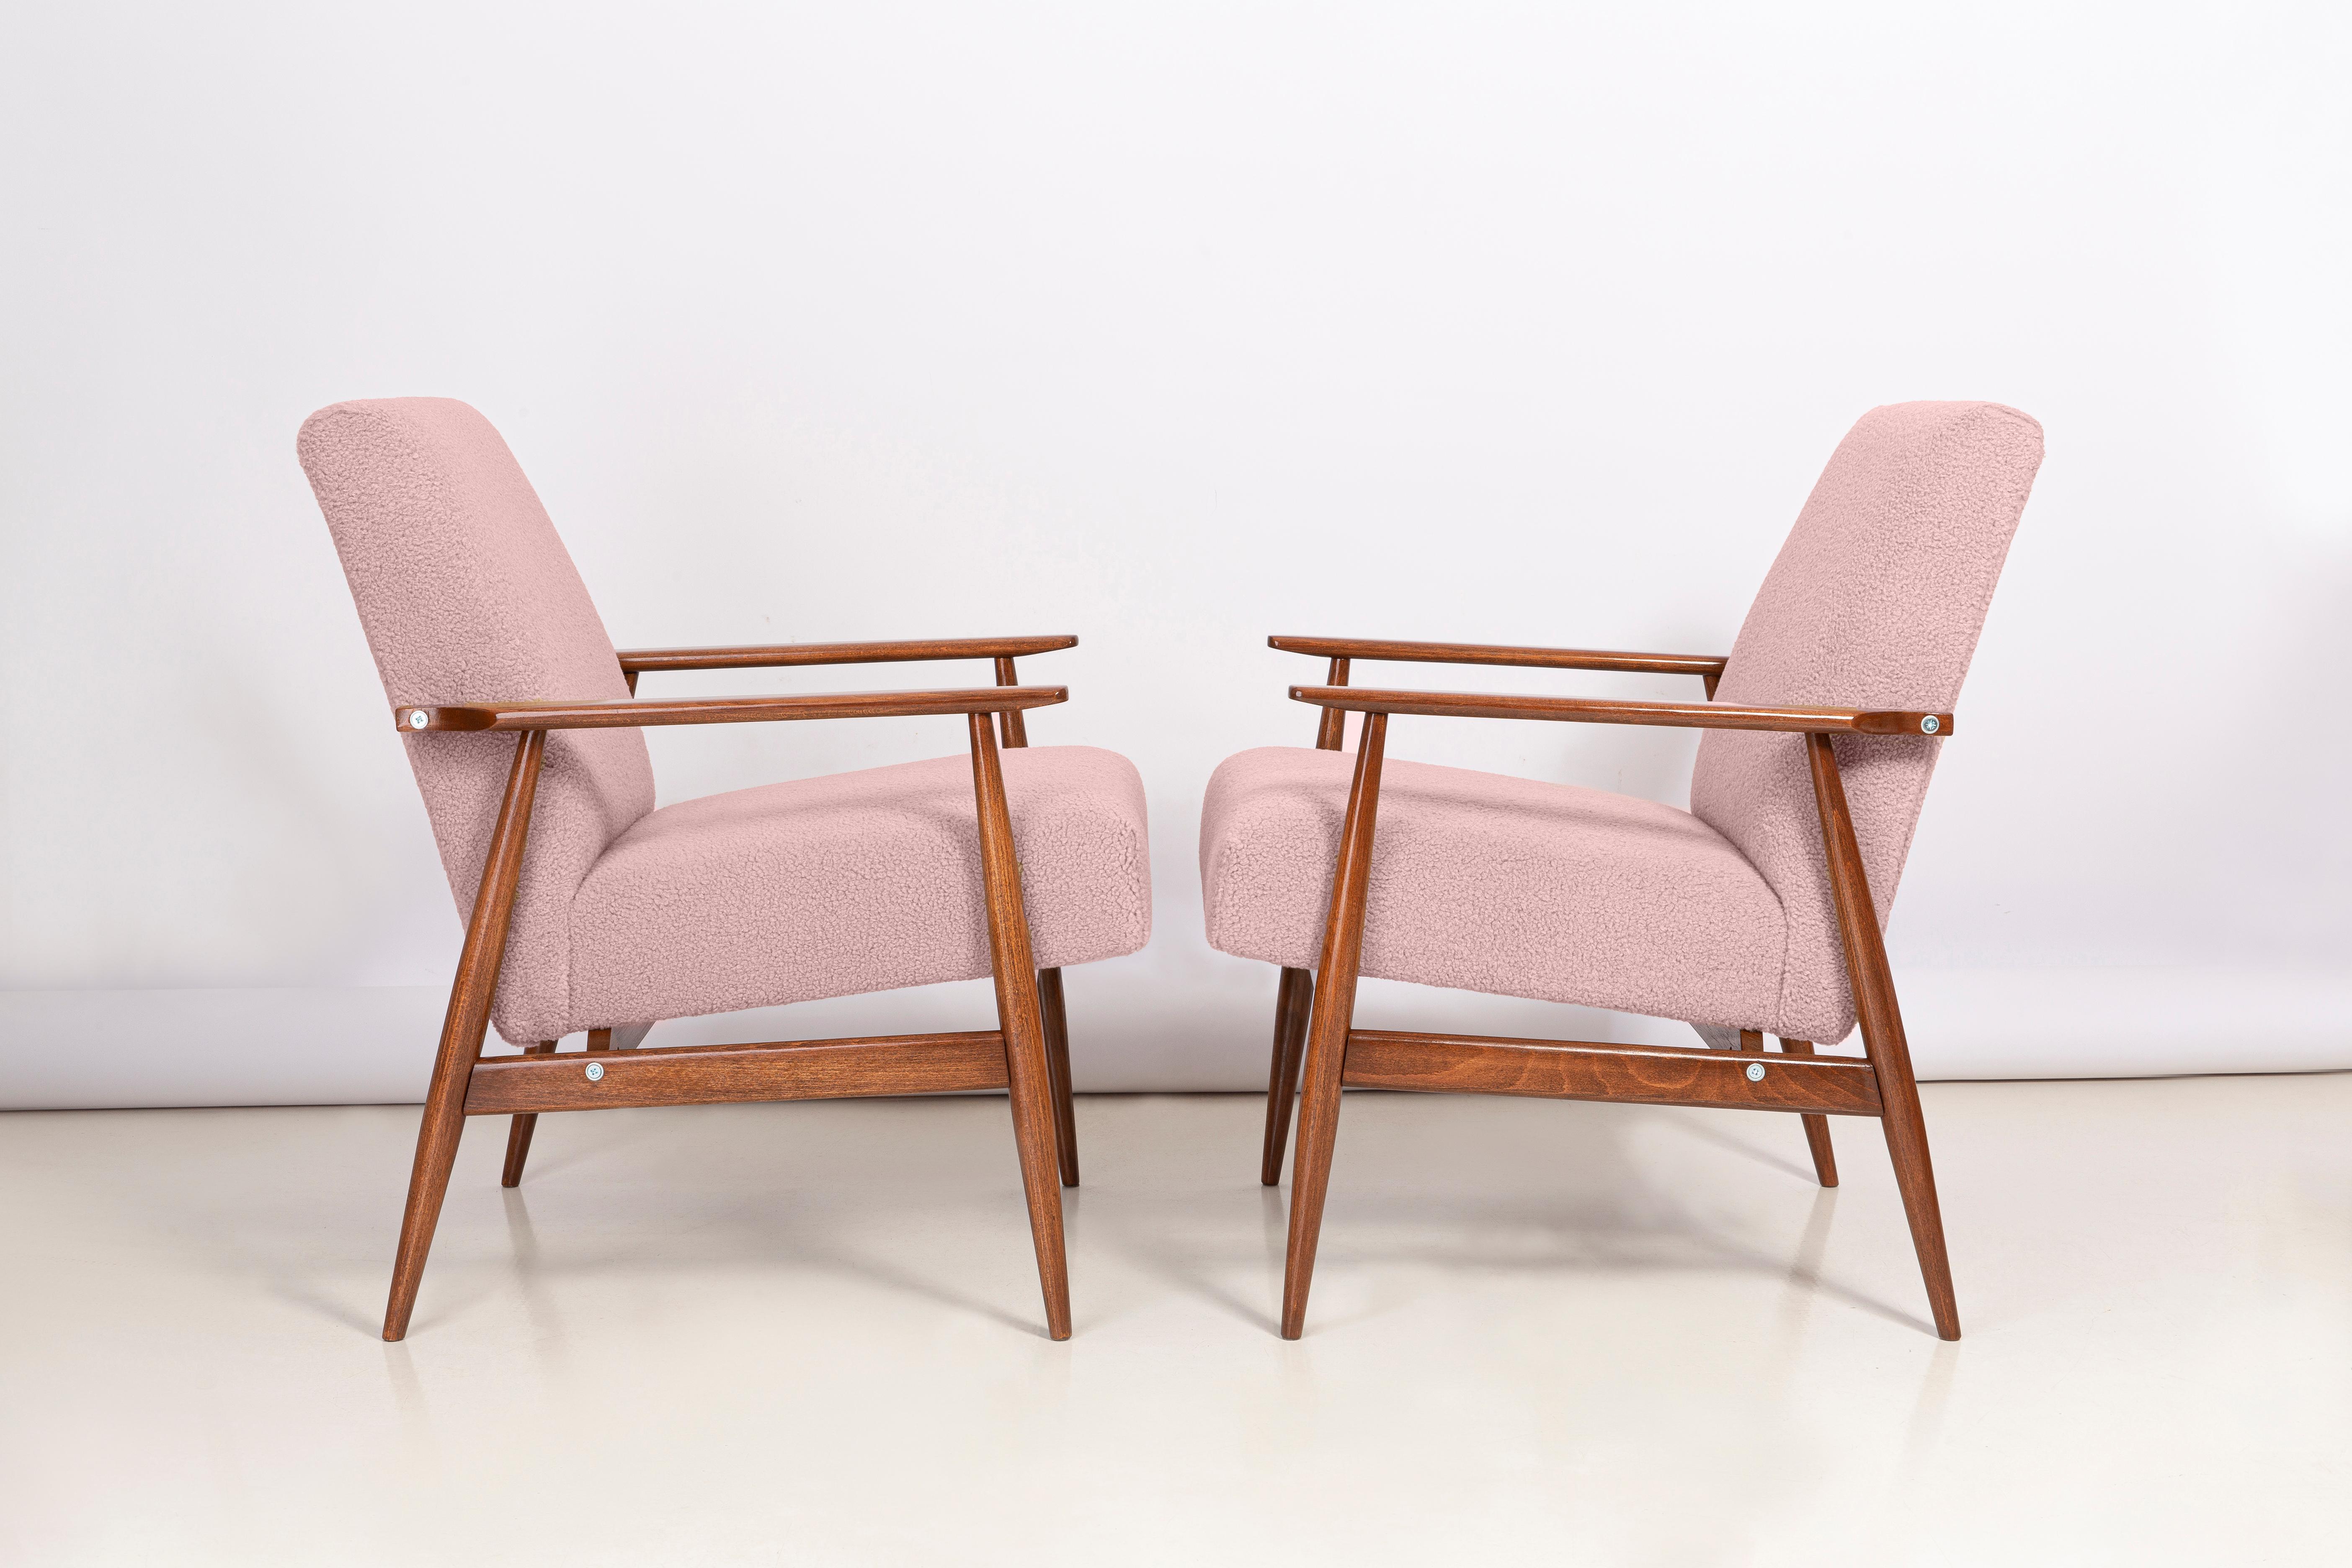 Fauteuils en bouclé rose poussiéreux, conçus par Henryk Lis. Meubles après une rénovation complète de la menuiserie et de la tapisserie. Le fauteuil sera parfait dans les espaces minimalistes, tant privés que publics. 

Les tissus d'ameublement en